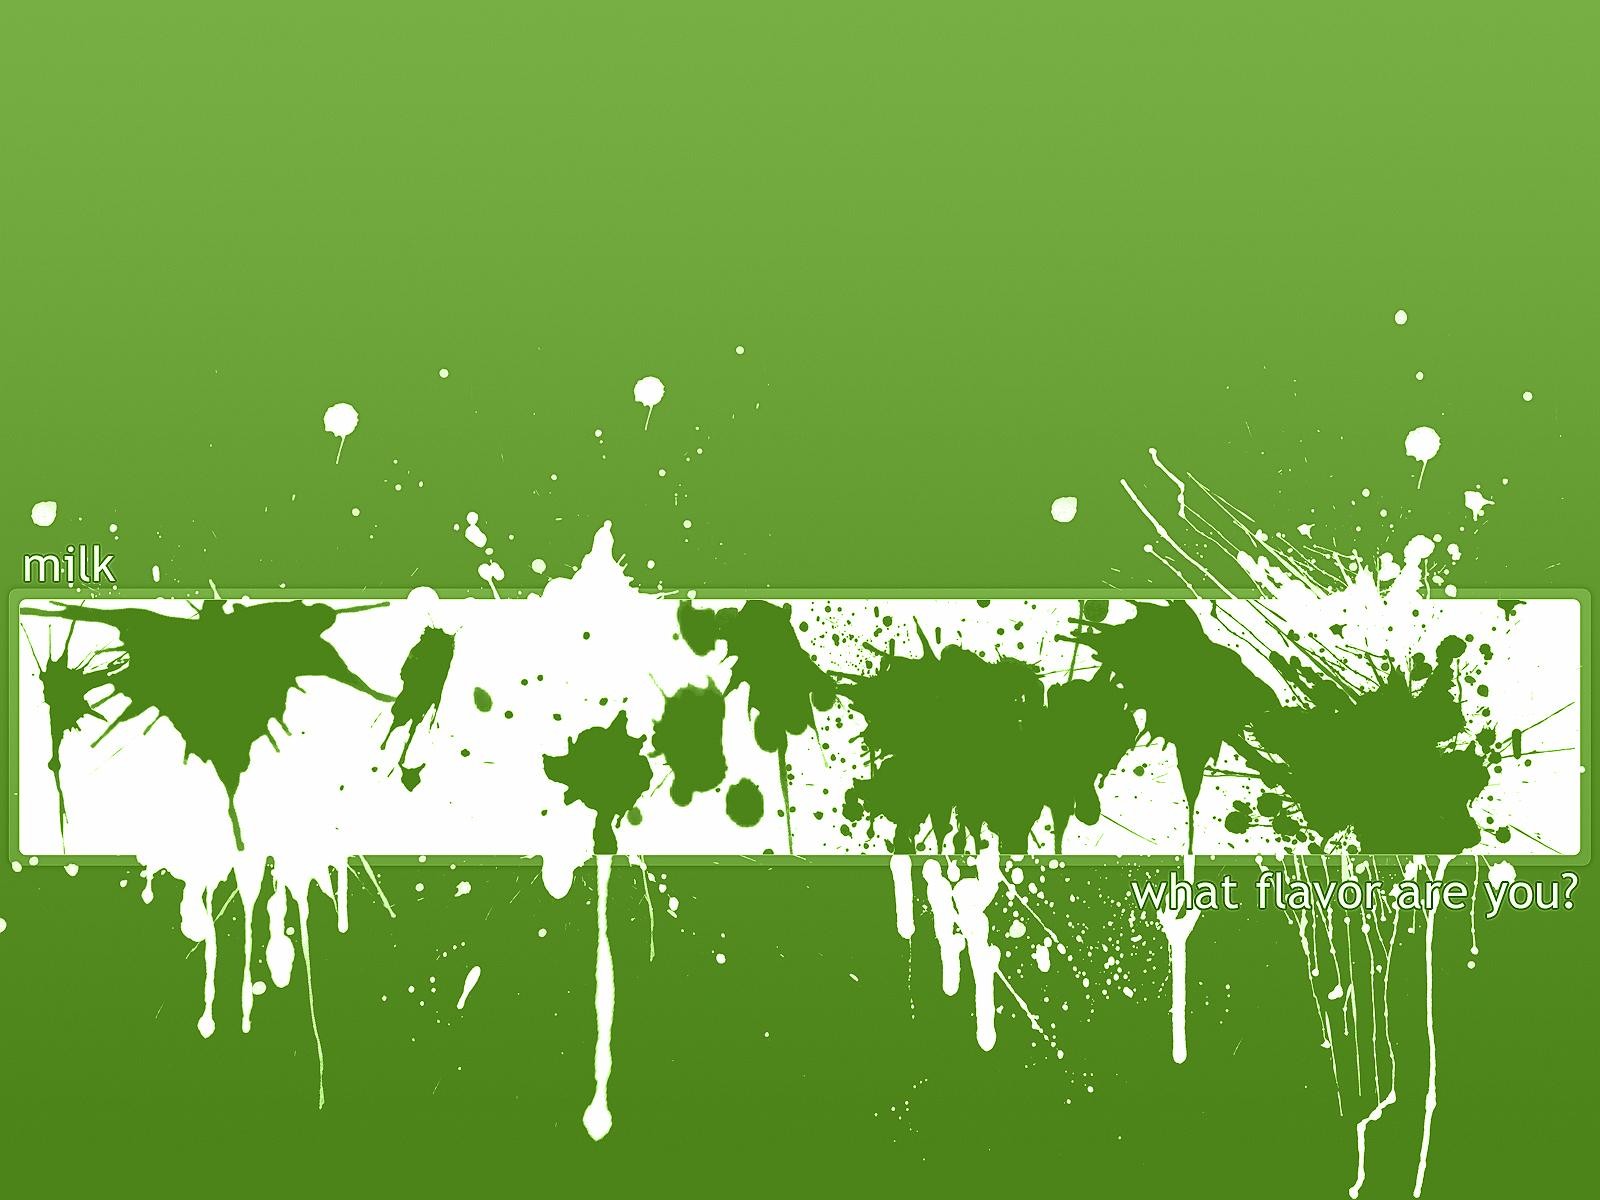 зеленая краска, текстура краски, фон, скачать фото, green paint texture background